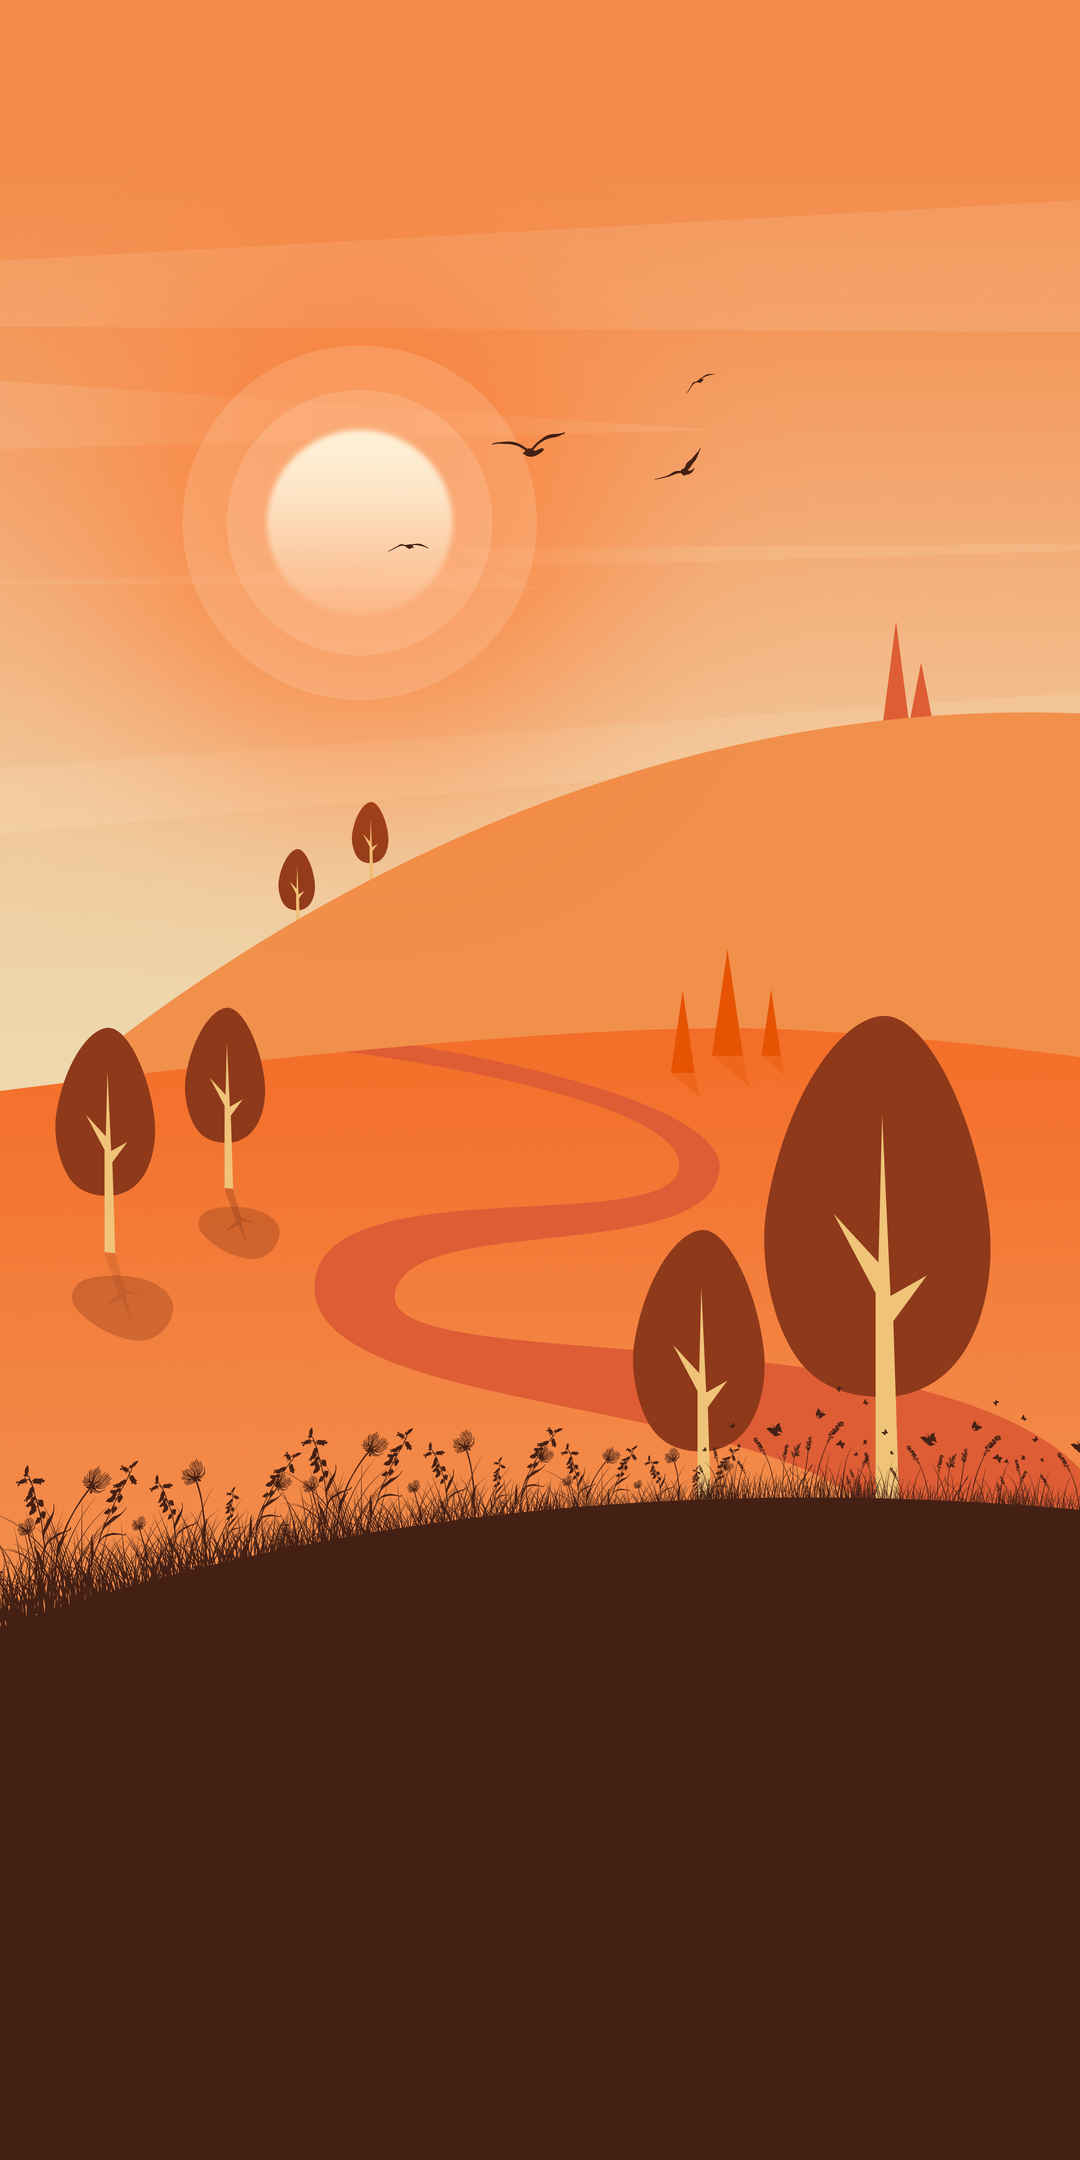 橙色 草原 树木 阳光 风景插画2750x5500手机壁纸